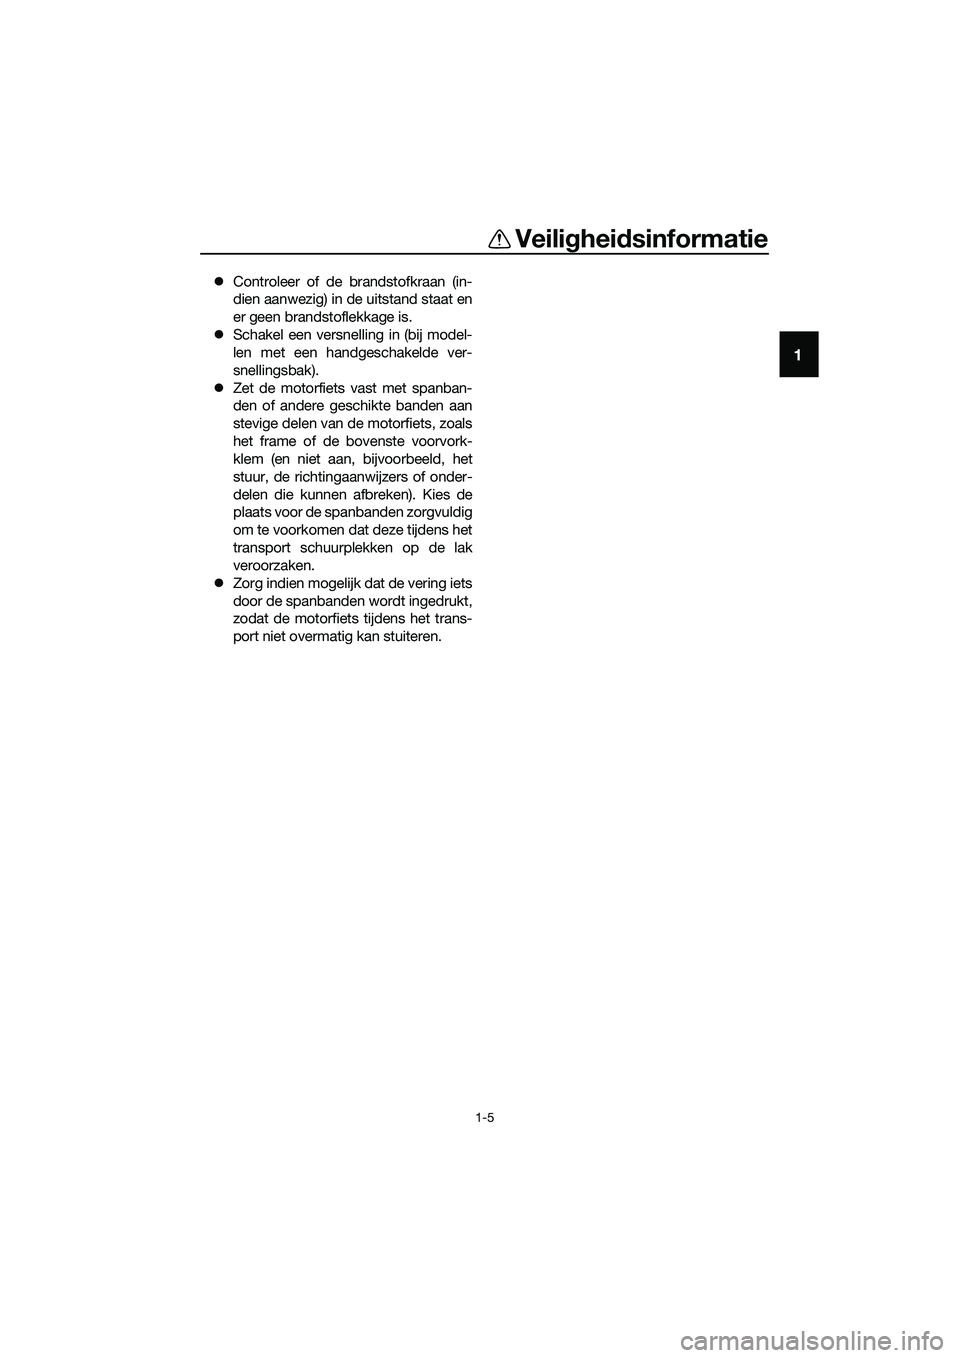 YAMAHA MT-03 2020  Instructieboekje (in Dutch) Veiligheidsinformatie
1-5
1
Controleer of de brandstofkraan (in-
dien aanwezig) in de uitstand staat en
er geen brandstoflekkage is.
Schakel een versnelling in (bij model-
len met een handgescha